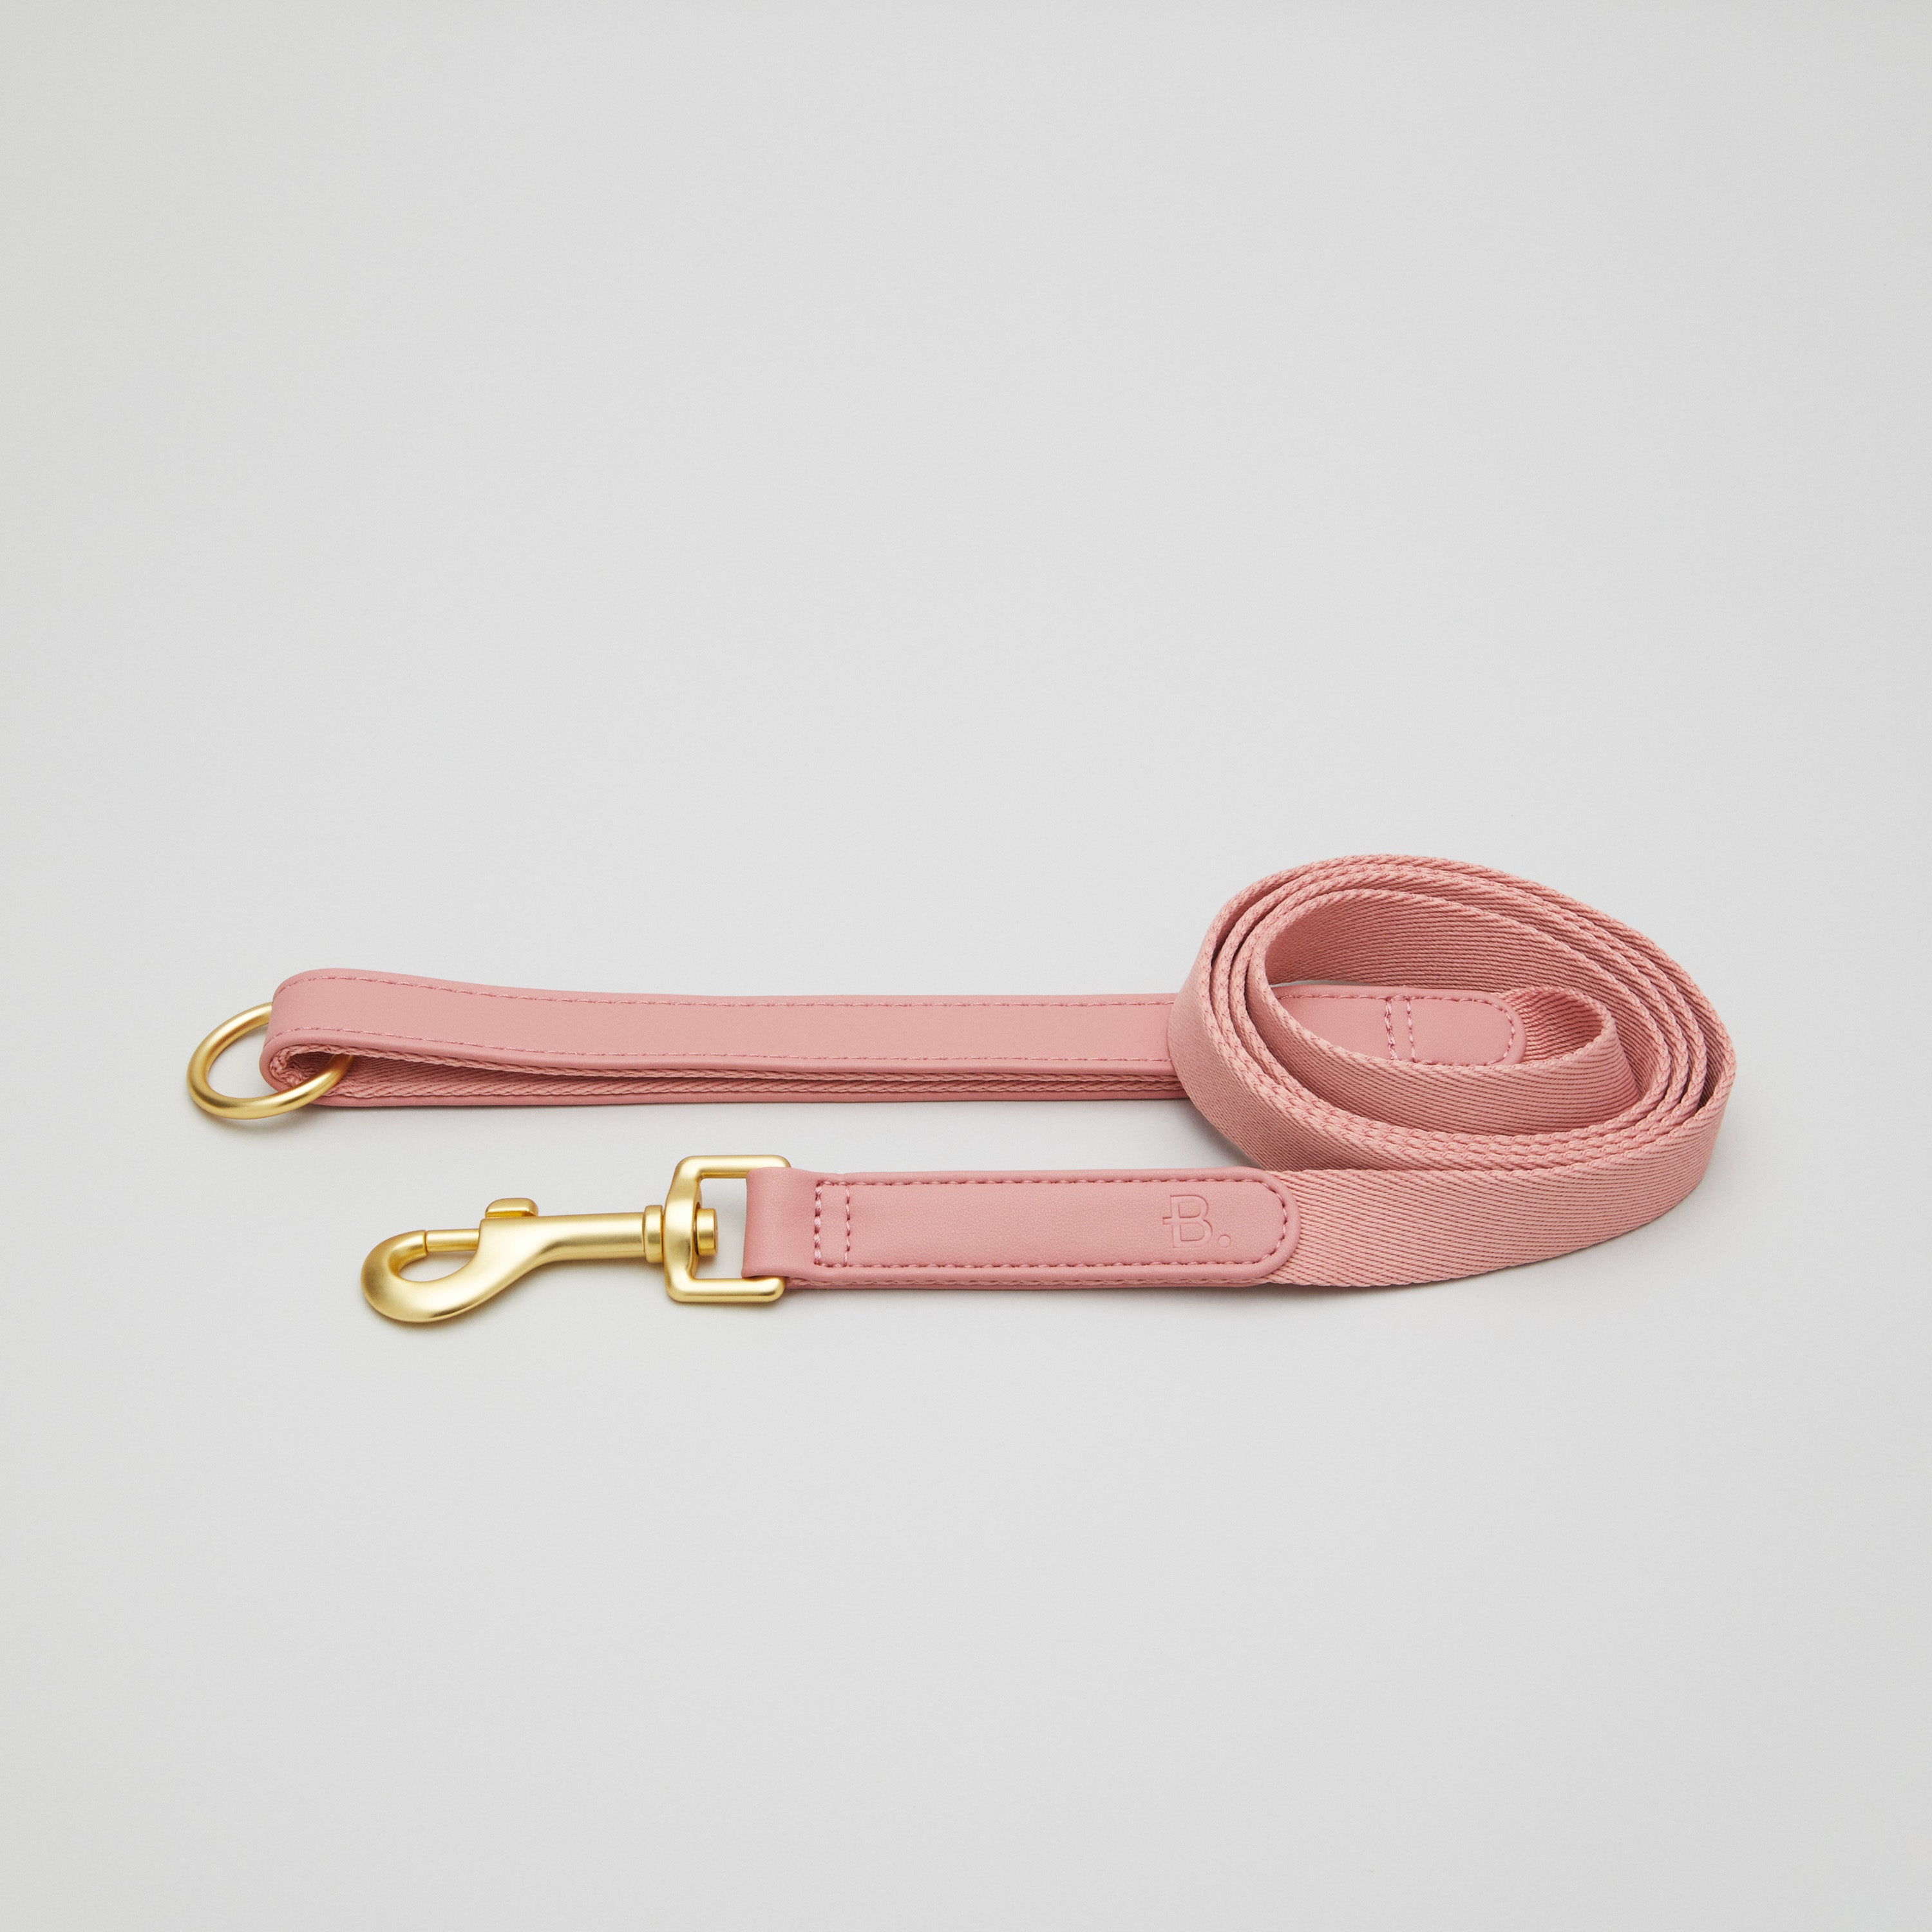 Kit de promenade pour collier de chien rose + support pour sac à caca